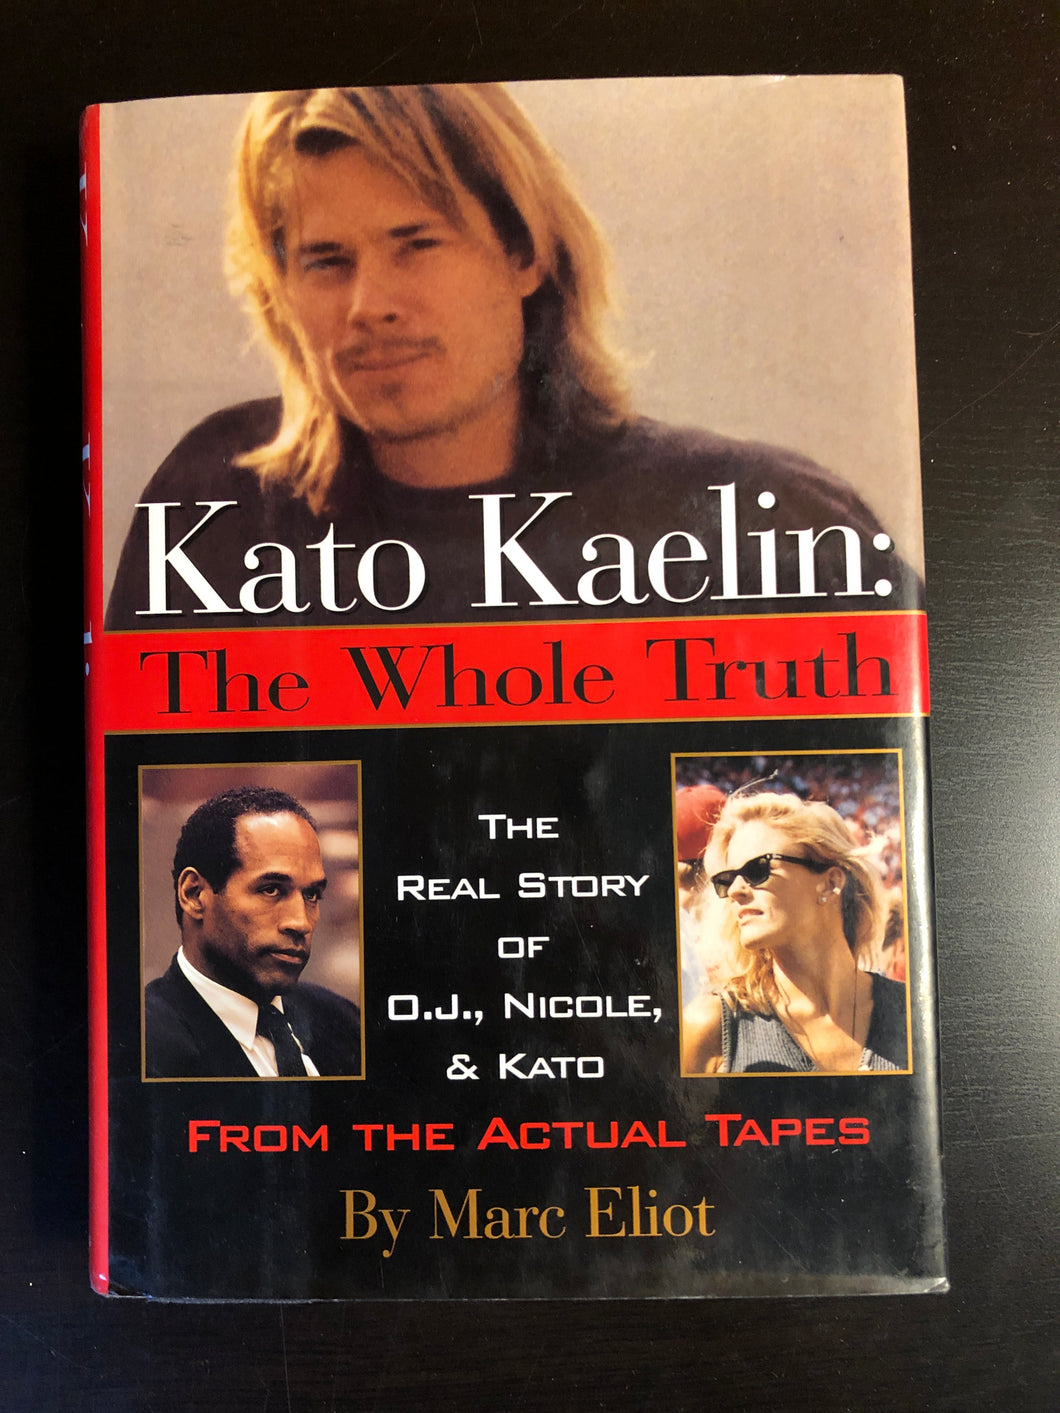 Kato Kaelin: The Whole Truth